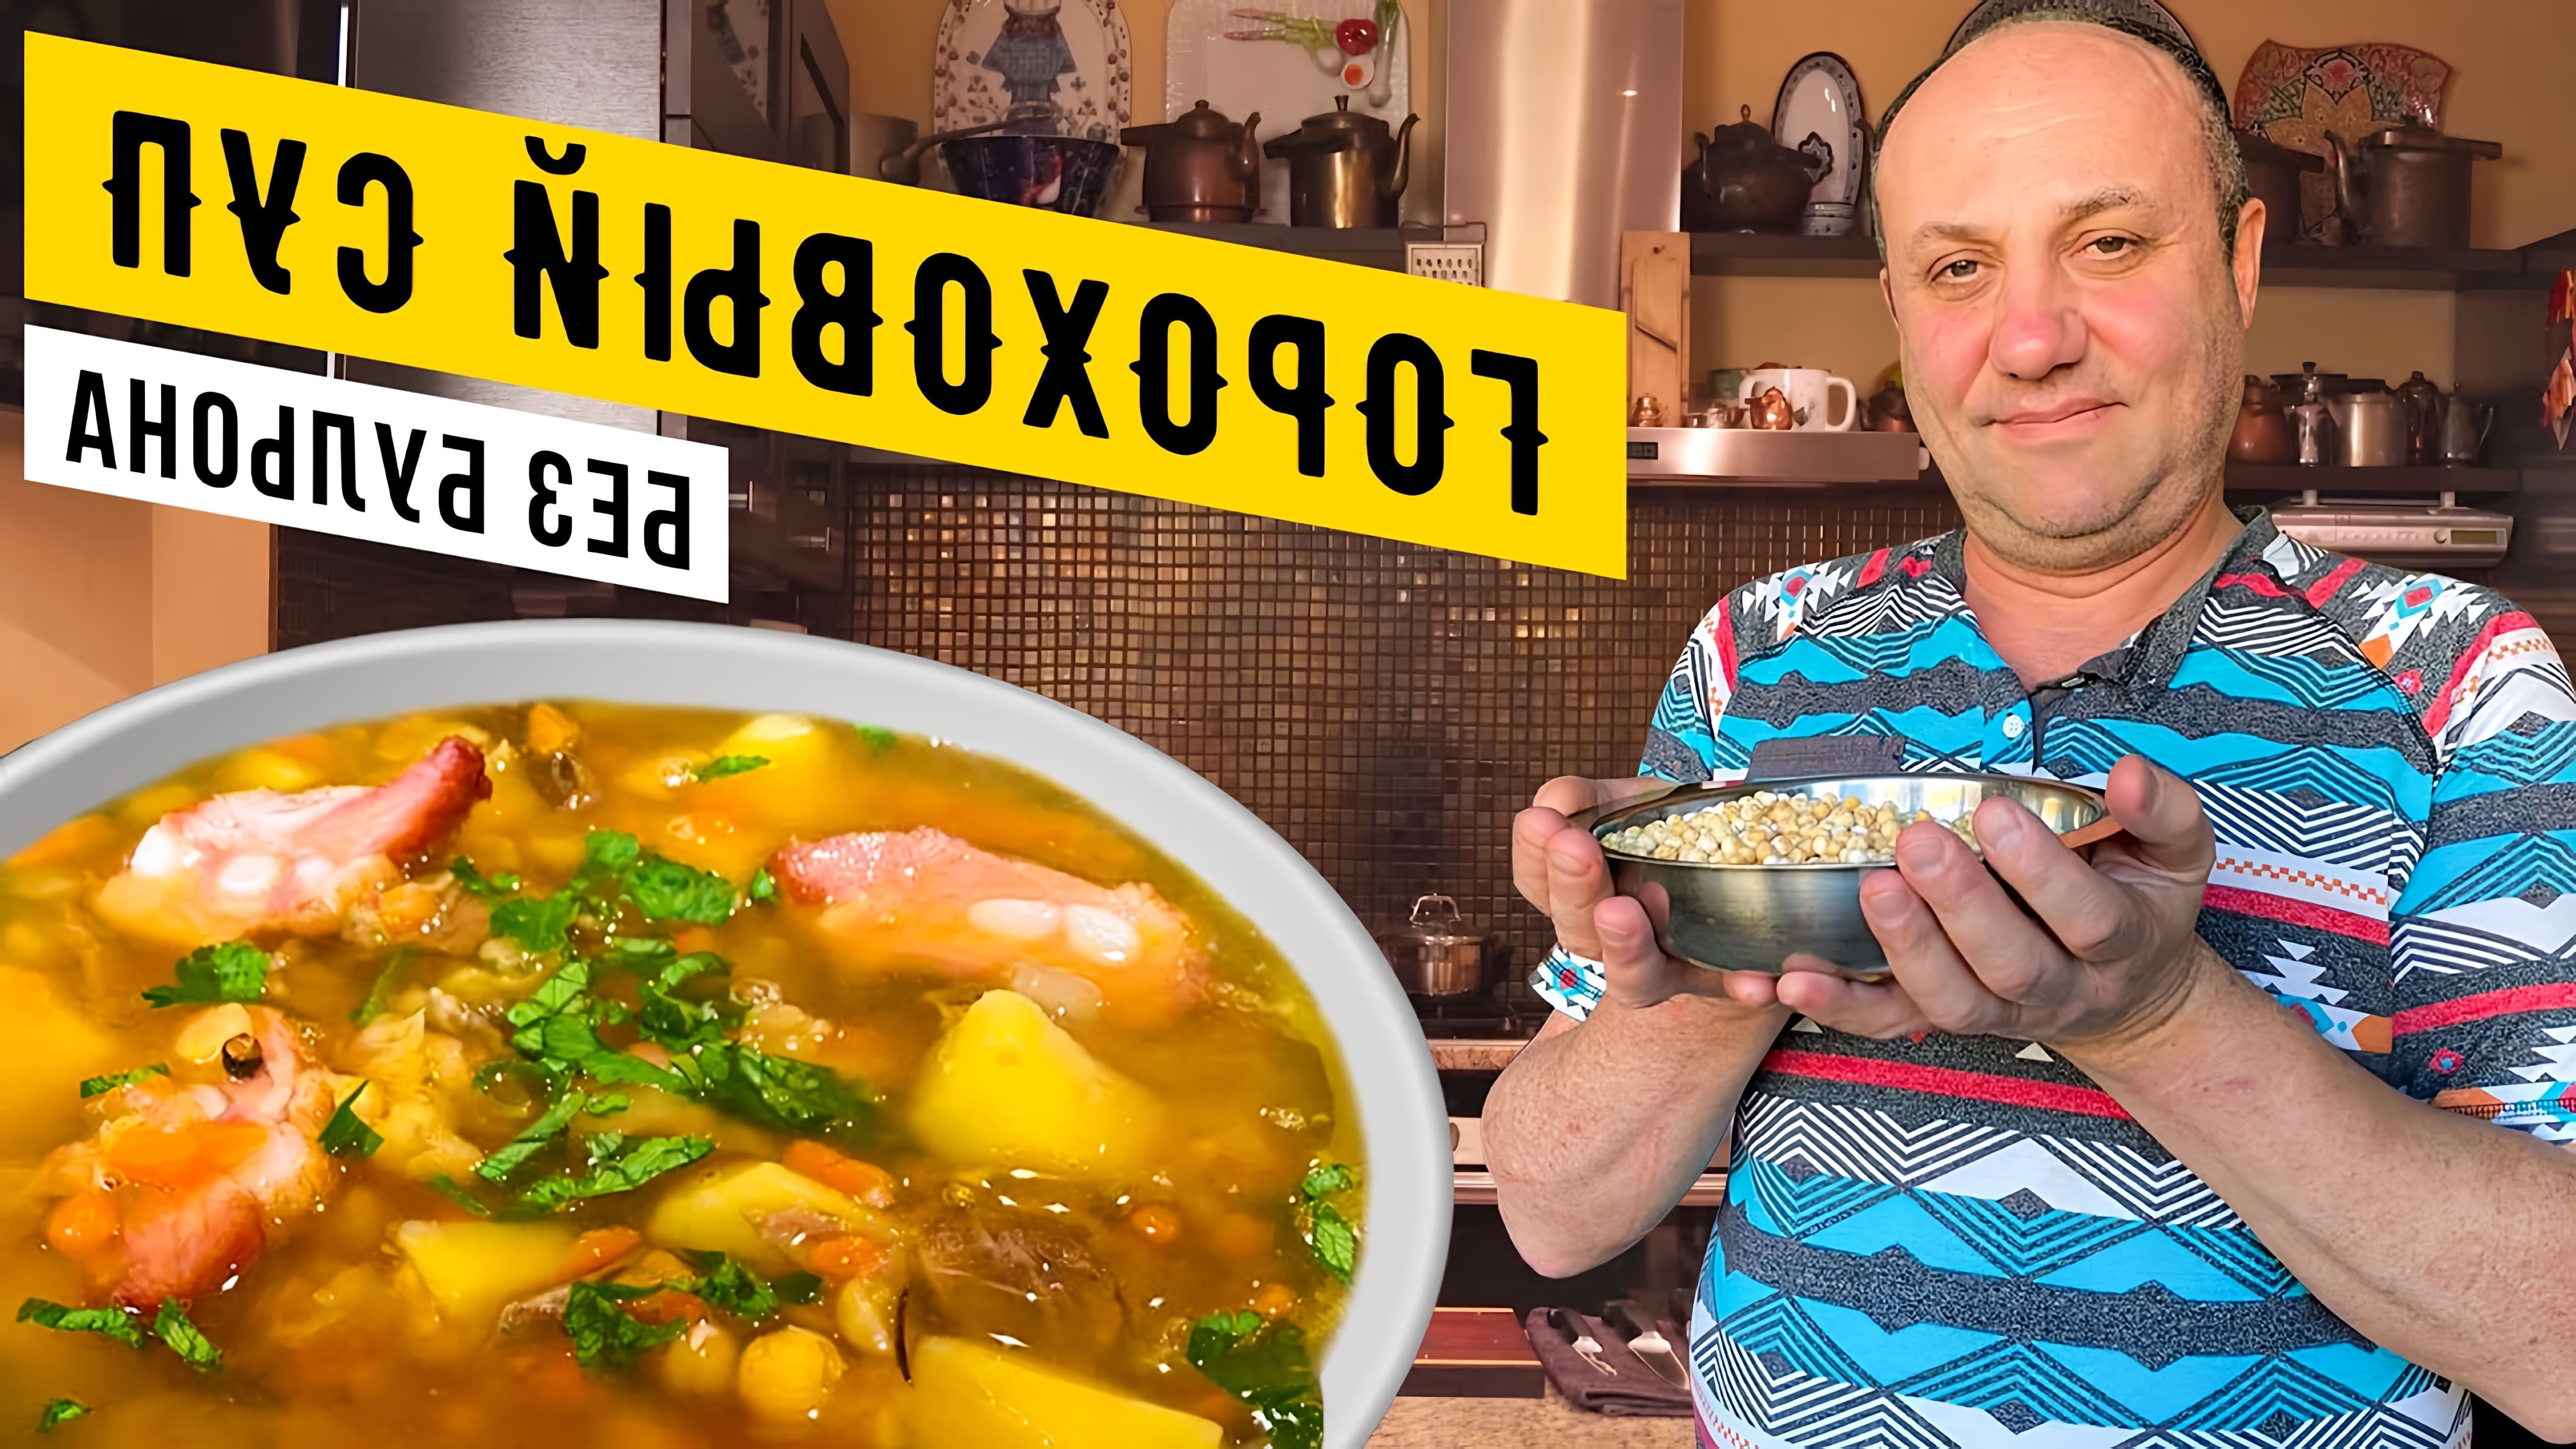 Видео посвящено приготовлению горохового супа с копченым мясом и грибами